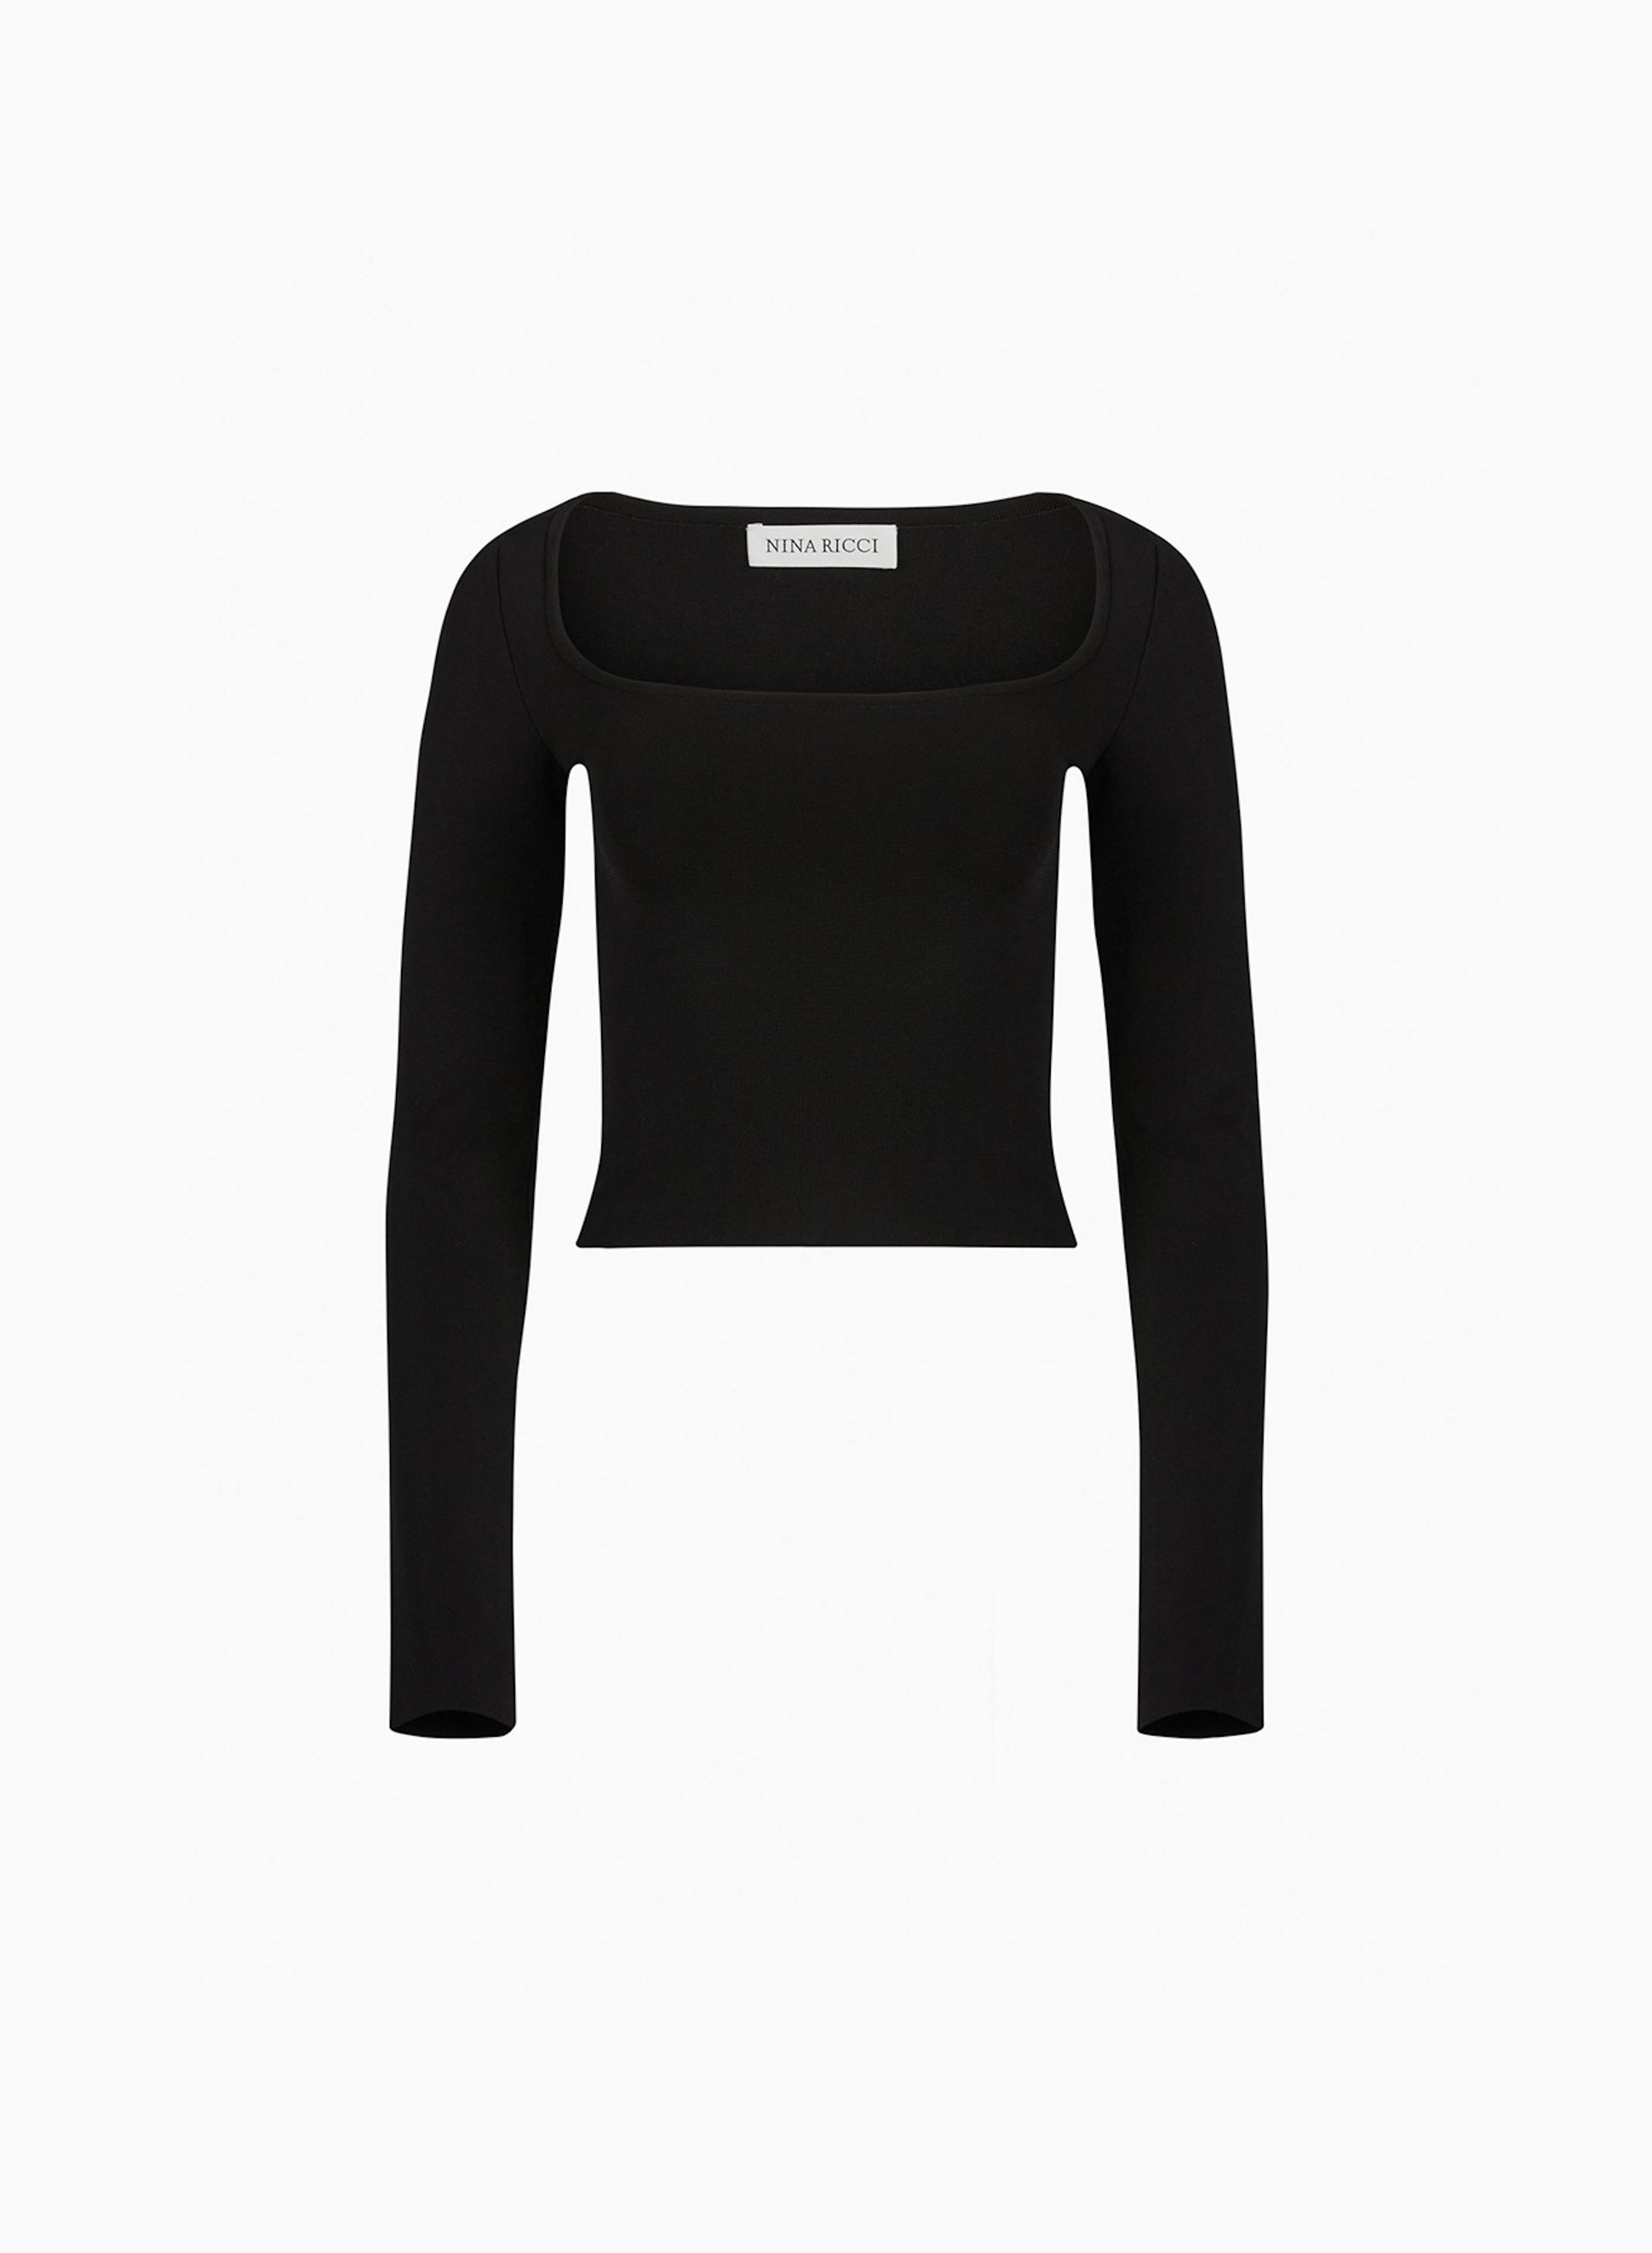 Square neckline top in black - Nina Ricci